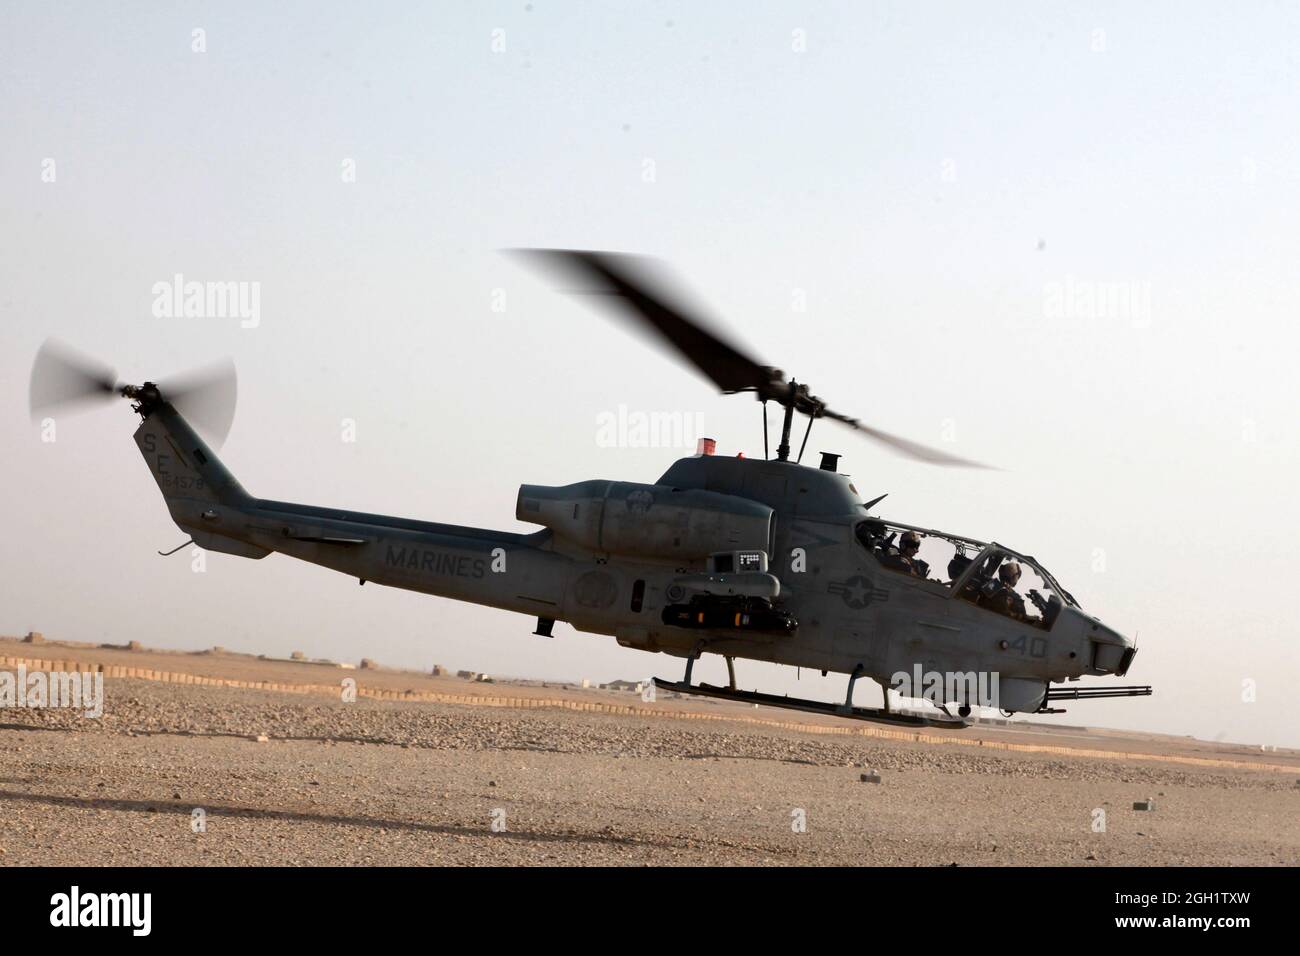 Le 20 juin 2012, un hélicoptère Cobra AH-1W du corps des Marines des États-Unis avec l'escadron d'hélicoptère d'attaque de lumière marine (HMLA) 469 prend son envol pour retourner au Camp Leatherneck après avoir exécuté l'opération Halberd V Helmand province (Afghanistan). Le HMLA-469 a assuré la reconnaissance aérienne et la sécurité des Marines de la 3e LAR pendant l'opération Halberd V afin d'empêcher la distribution de la contrebande à l'appui des opérations de lutte contre l'insurrection. Banque D'Images